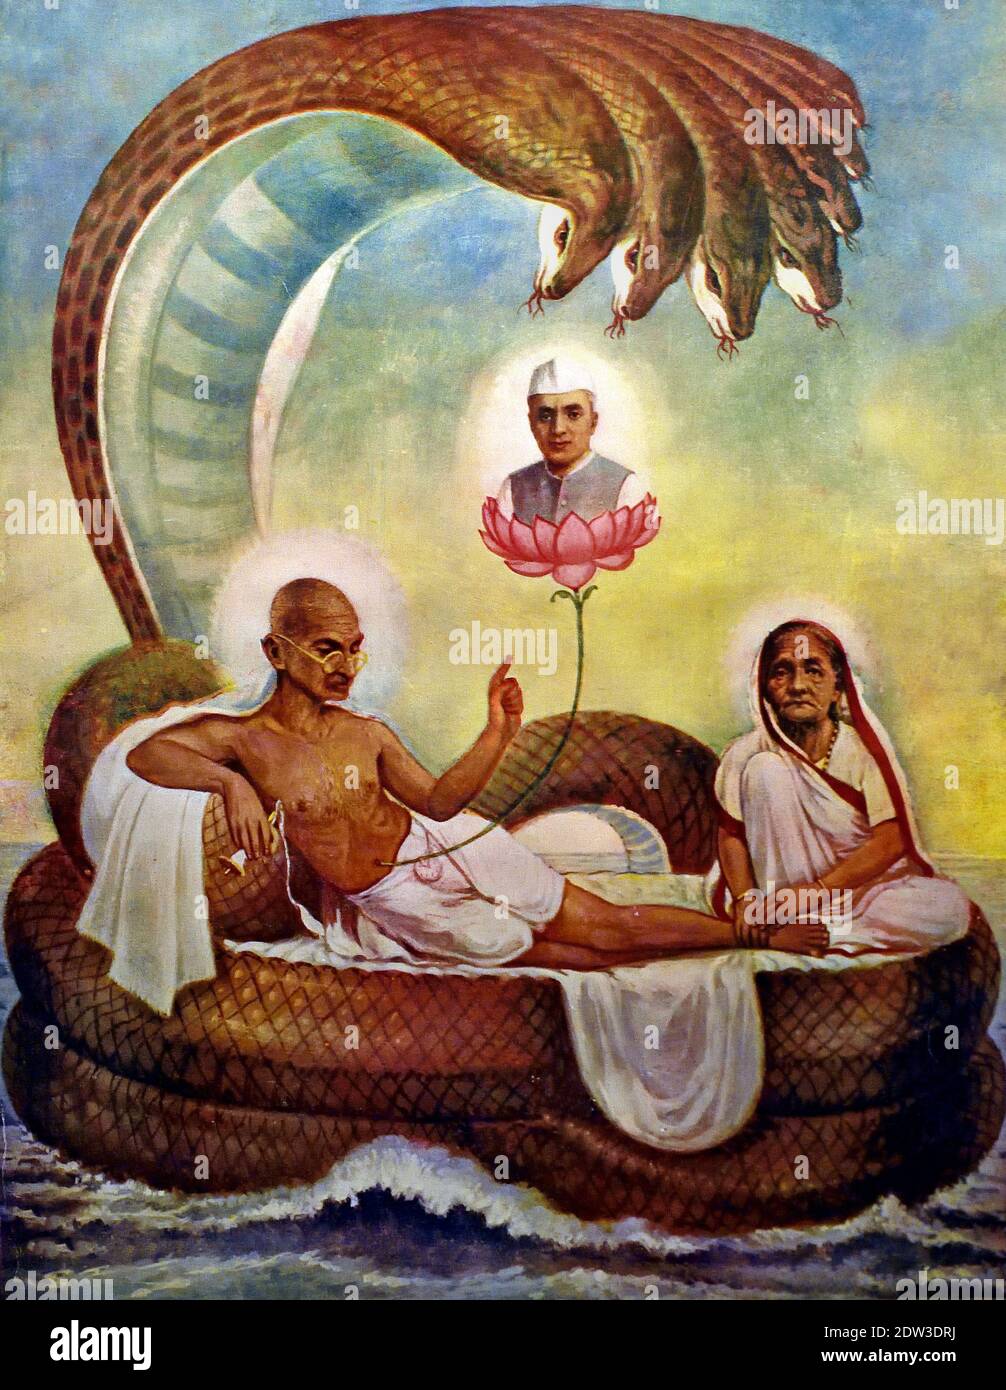 Gandhi como Vishnu en la serpiente Ananta en las representaciones de Vishnu un loto crece desde su ombligo en el que Brahma se sienta, simbolizando la creación. India, India, ( Mahatma Gandhi (1869-1948, Mohandas Karamchand Gandhi) luchador por la libertad y defensor de la campaña no violenta. Foto de stock